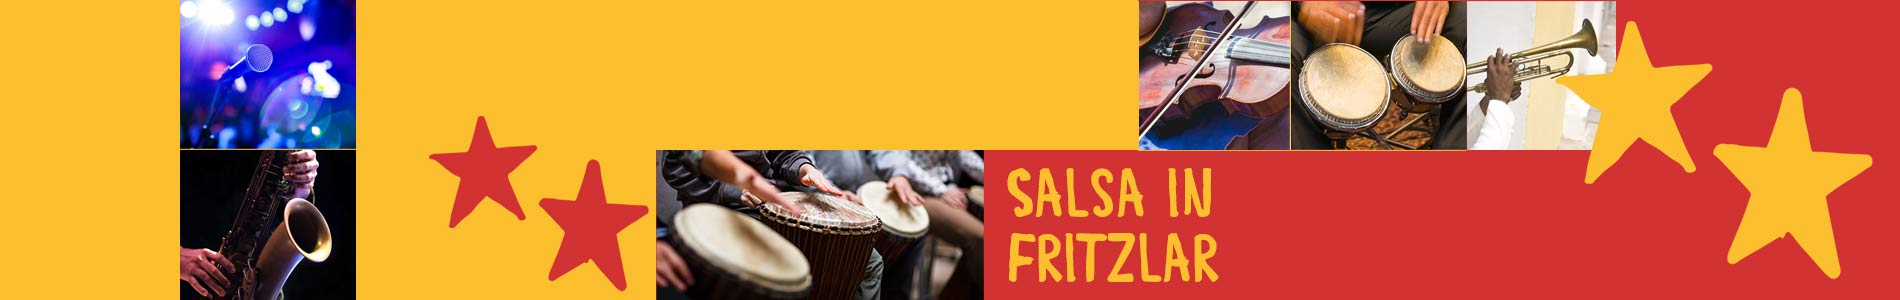 Salsa in Fritzlar – Salsa lernen und tanzen, Tanzkurse, Partys, Veranstaltungen